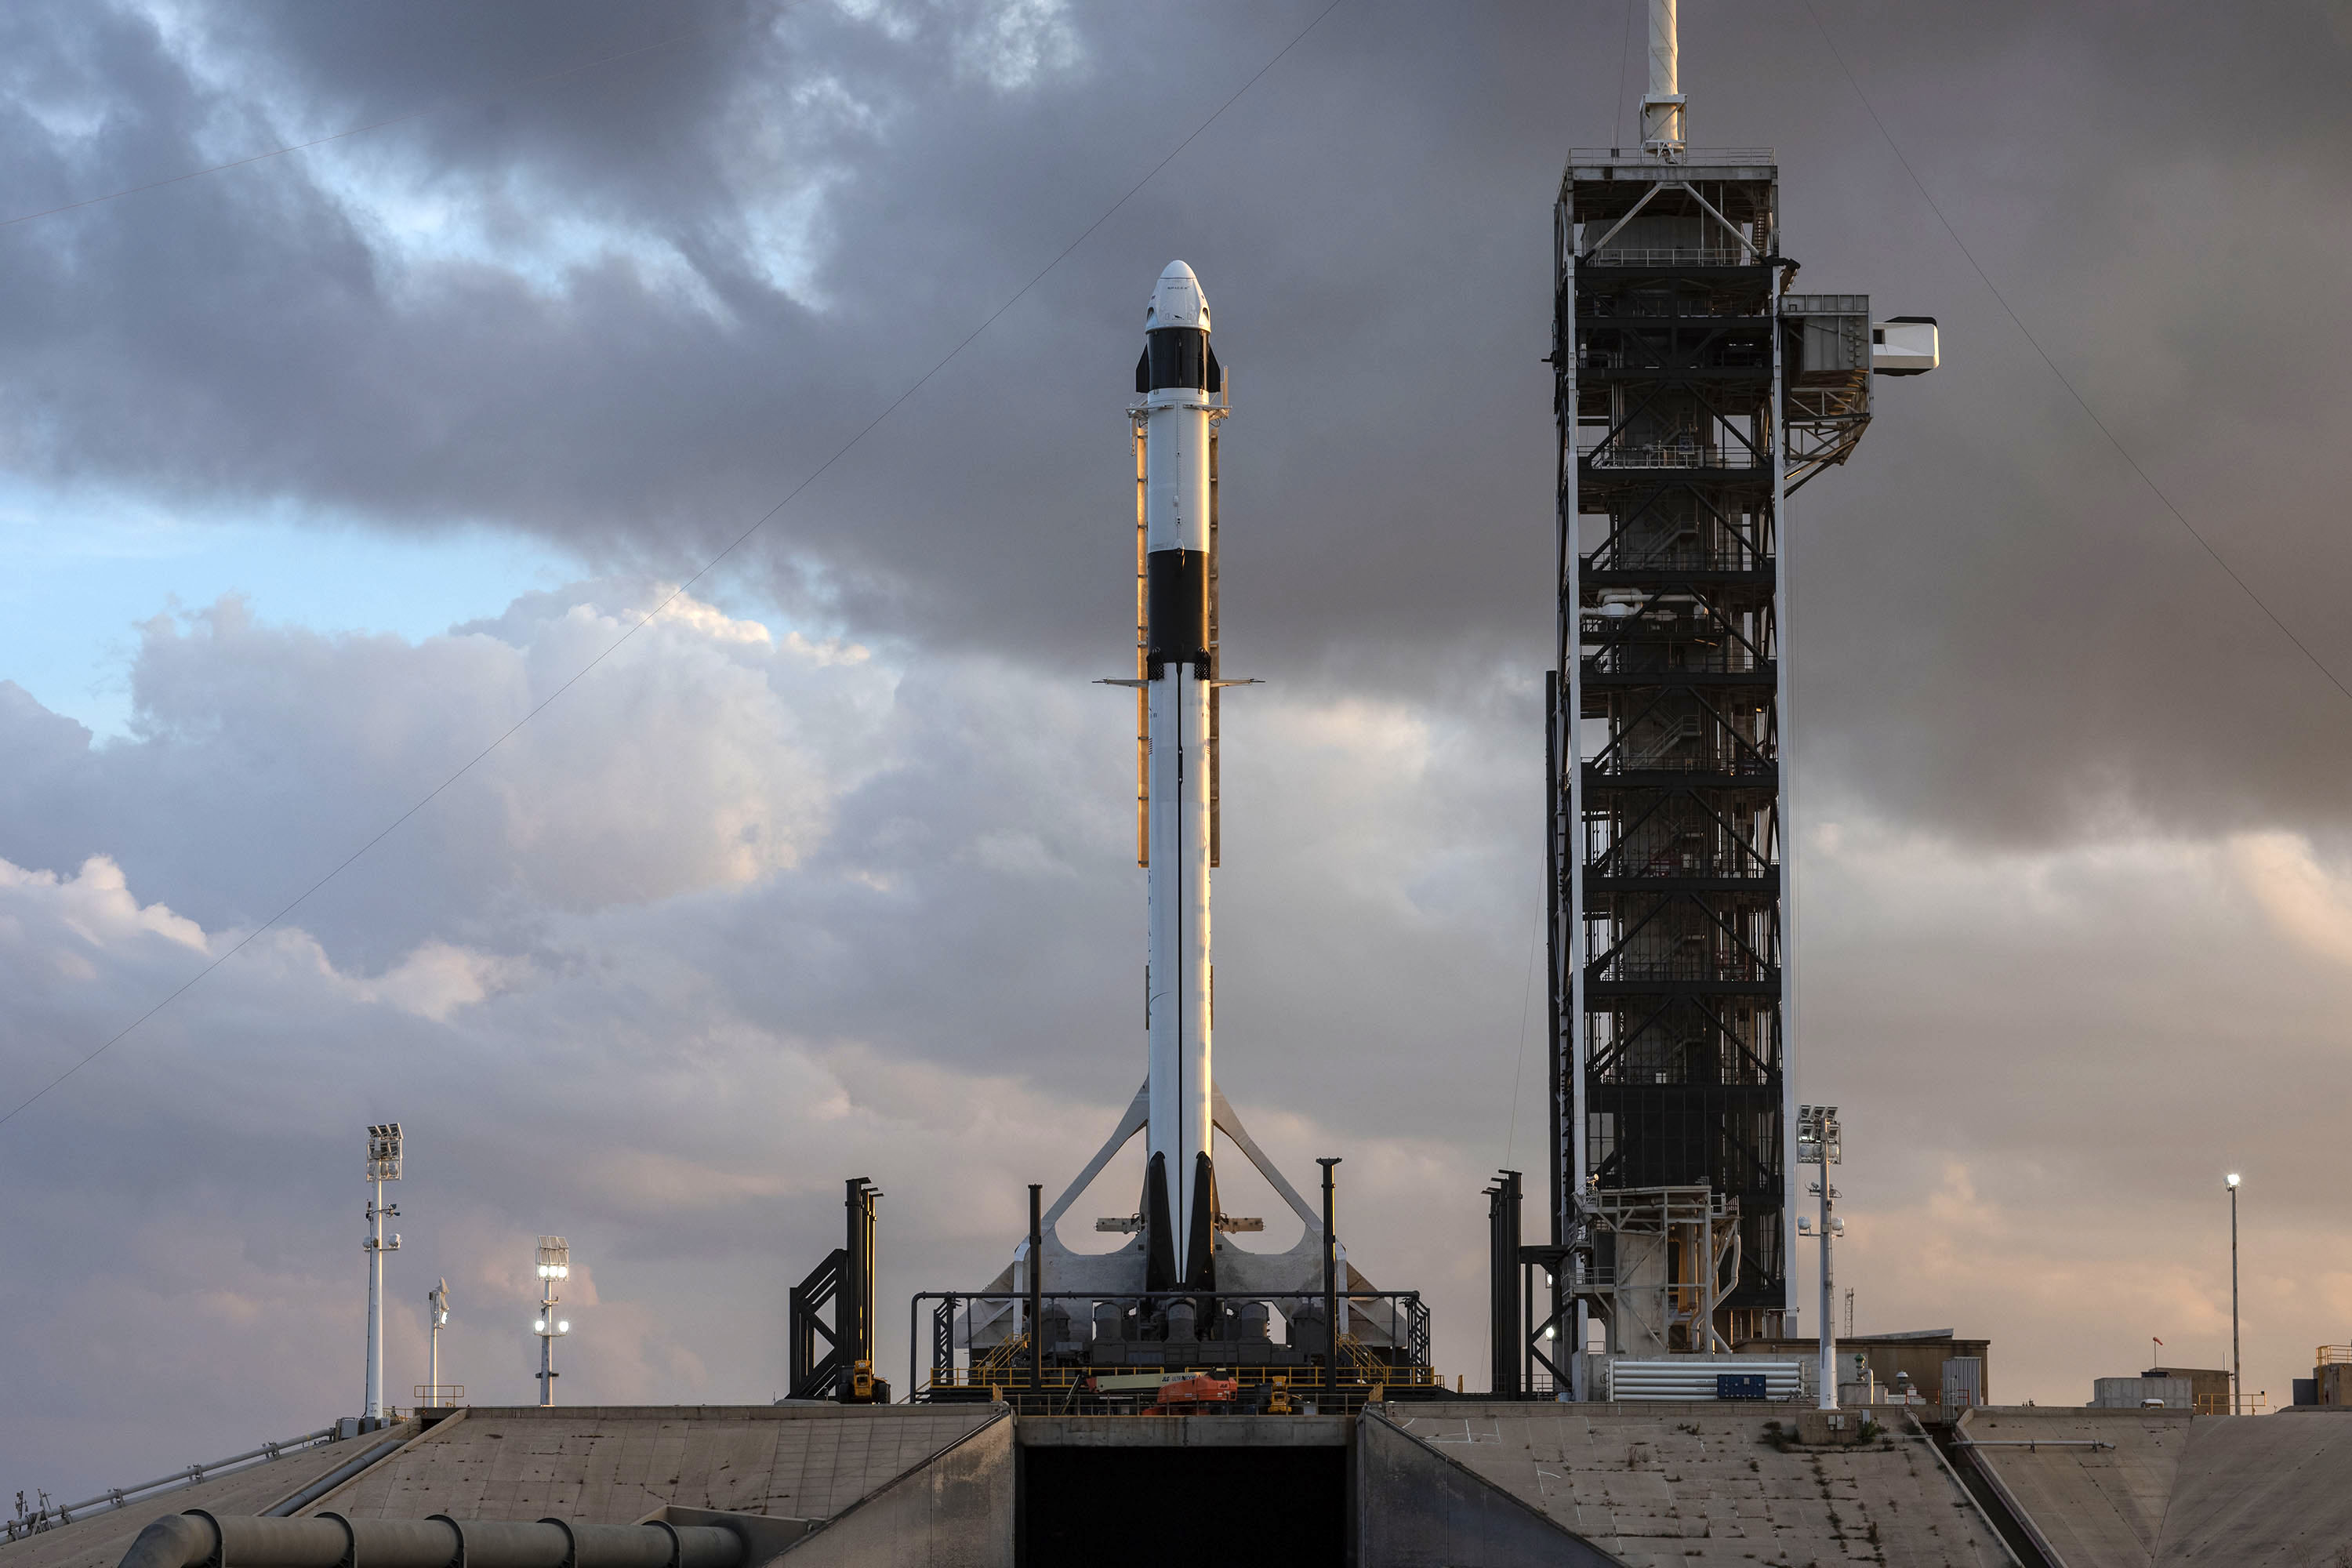 Falcon 9 CCtCap Demo Mission 1